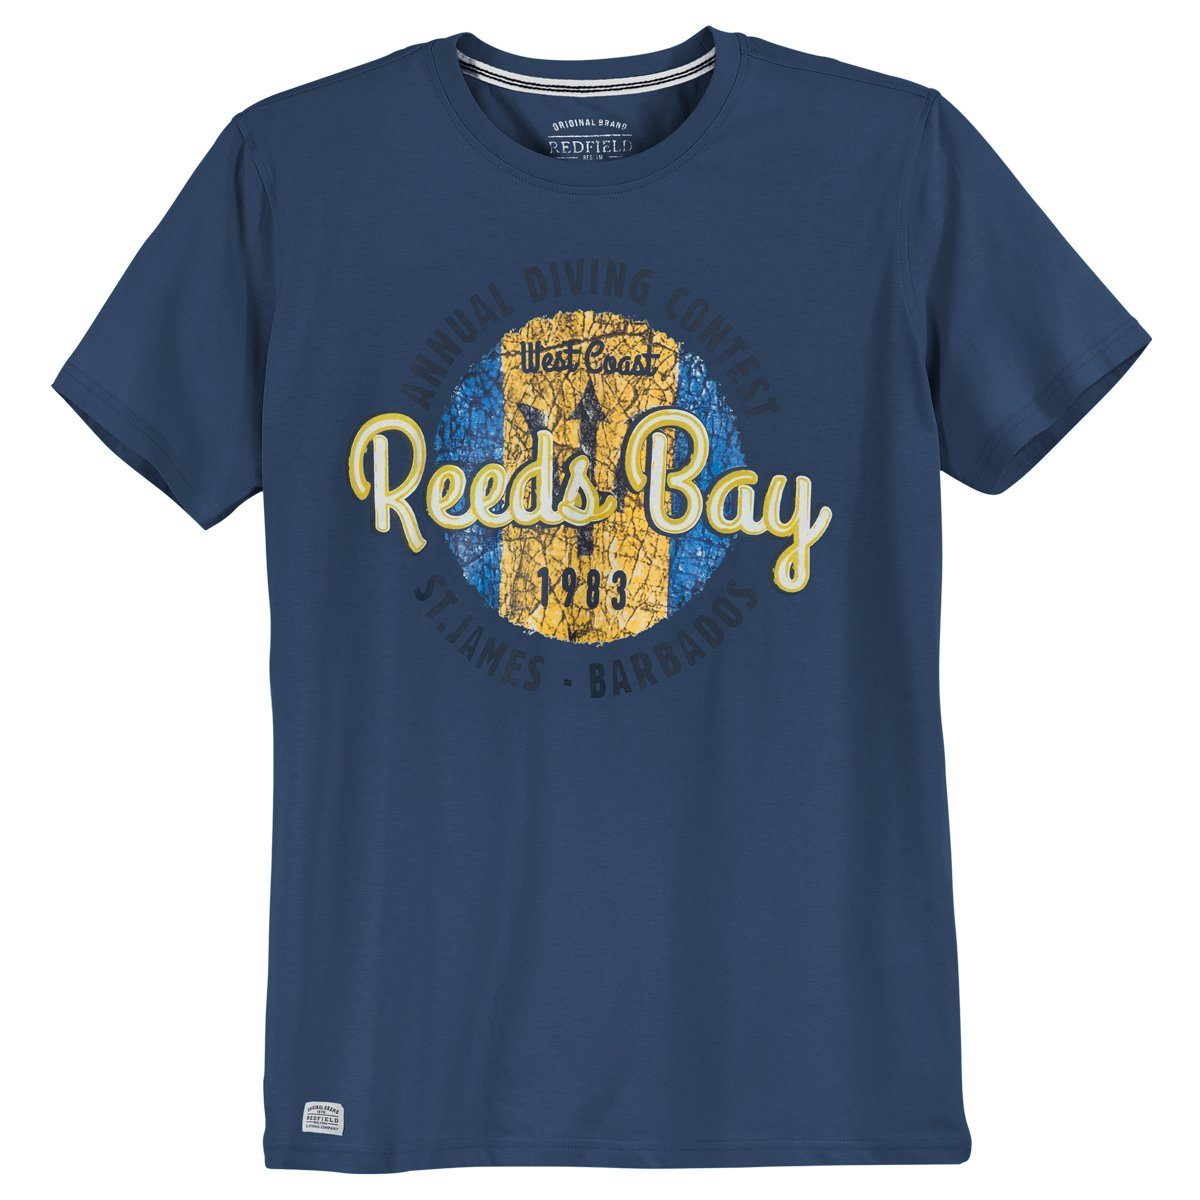 Herren Shirts redfield Rundhalsshirt Große Größen T-Shirt denimblau Print Reeds Bay Redfield